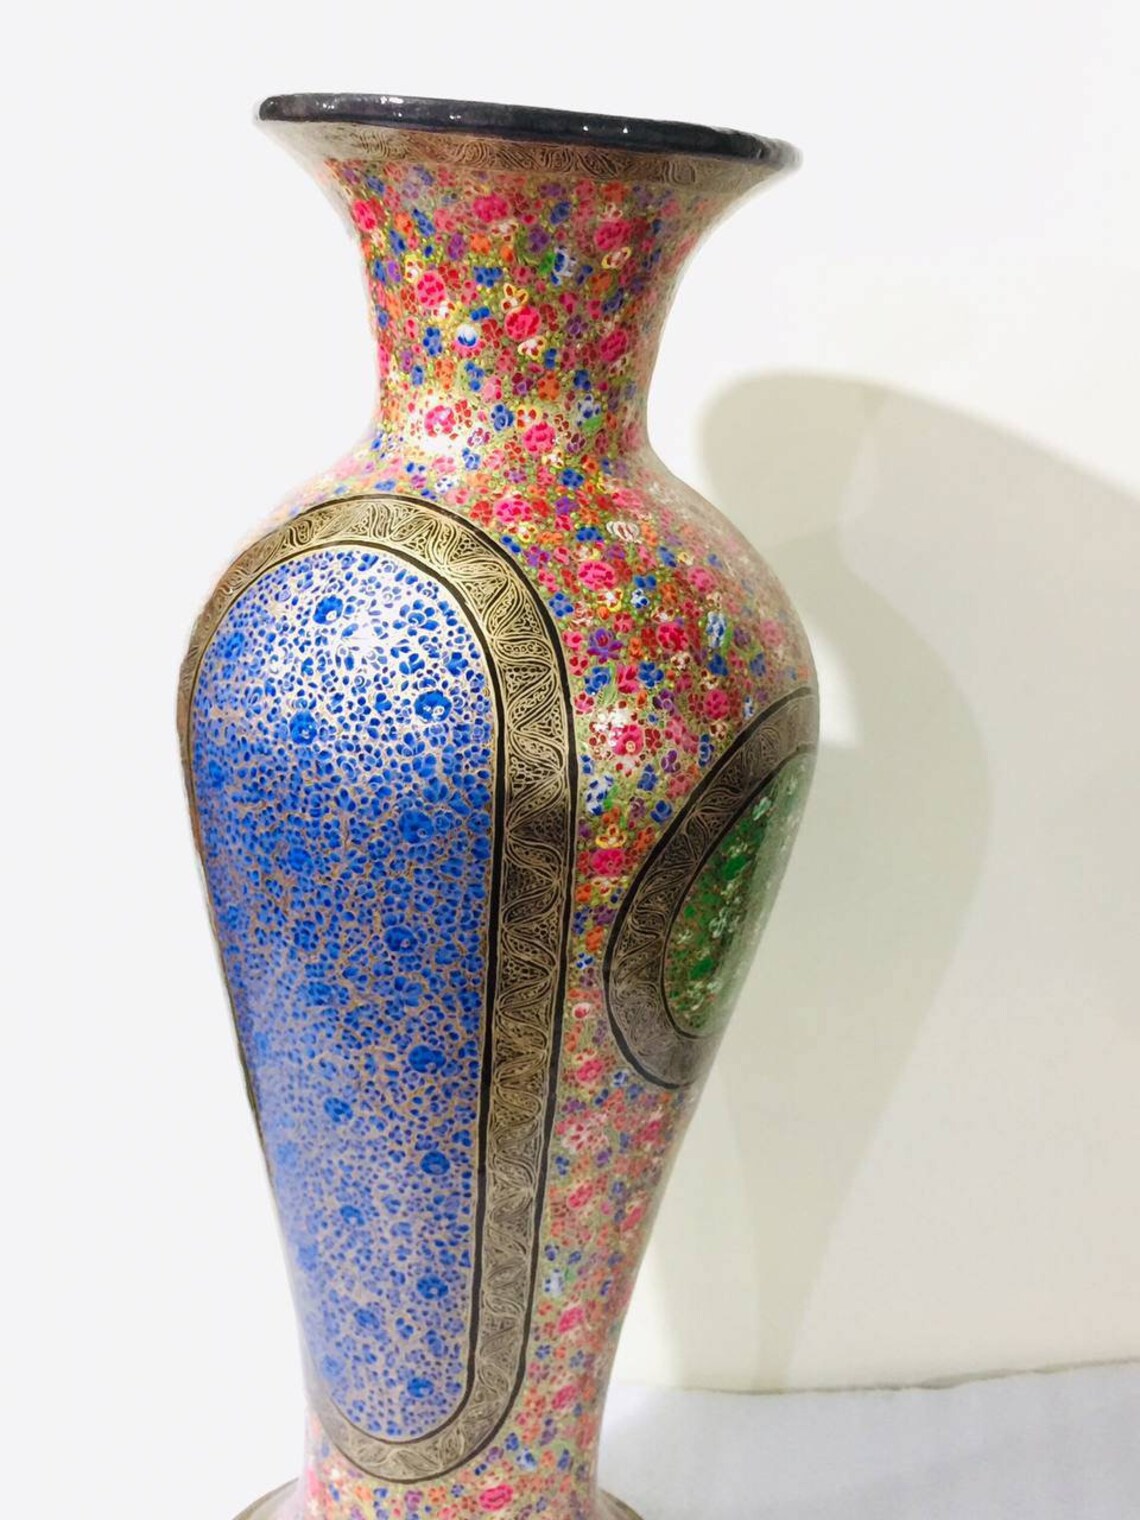 Handmade Kashmiri paper mache flower vase, Hand painted flower vase